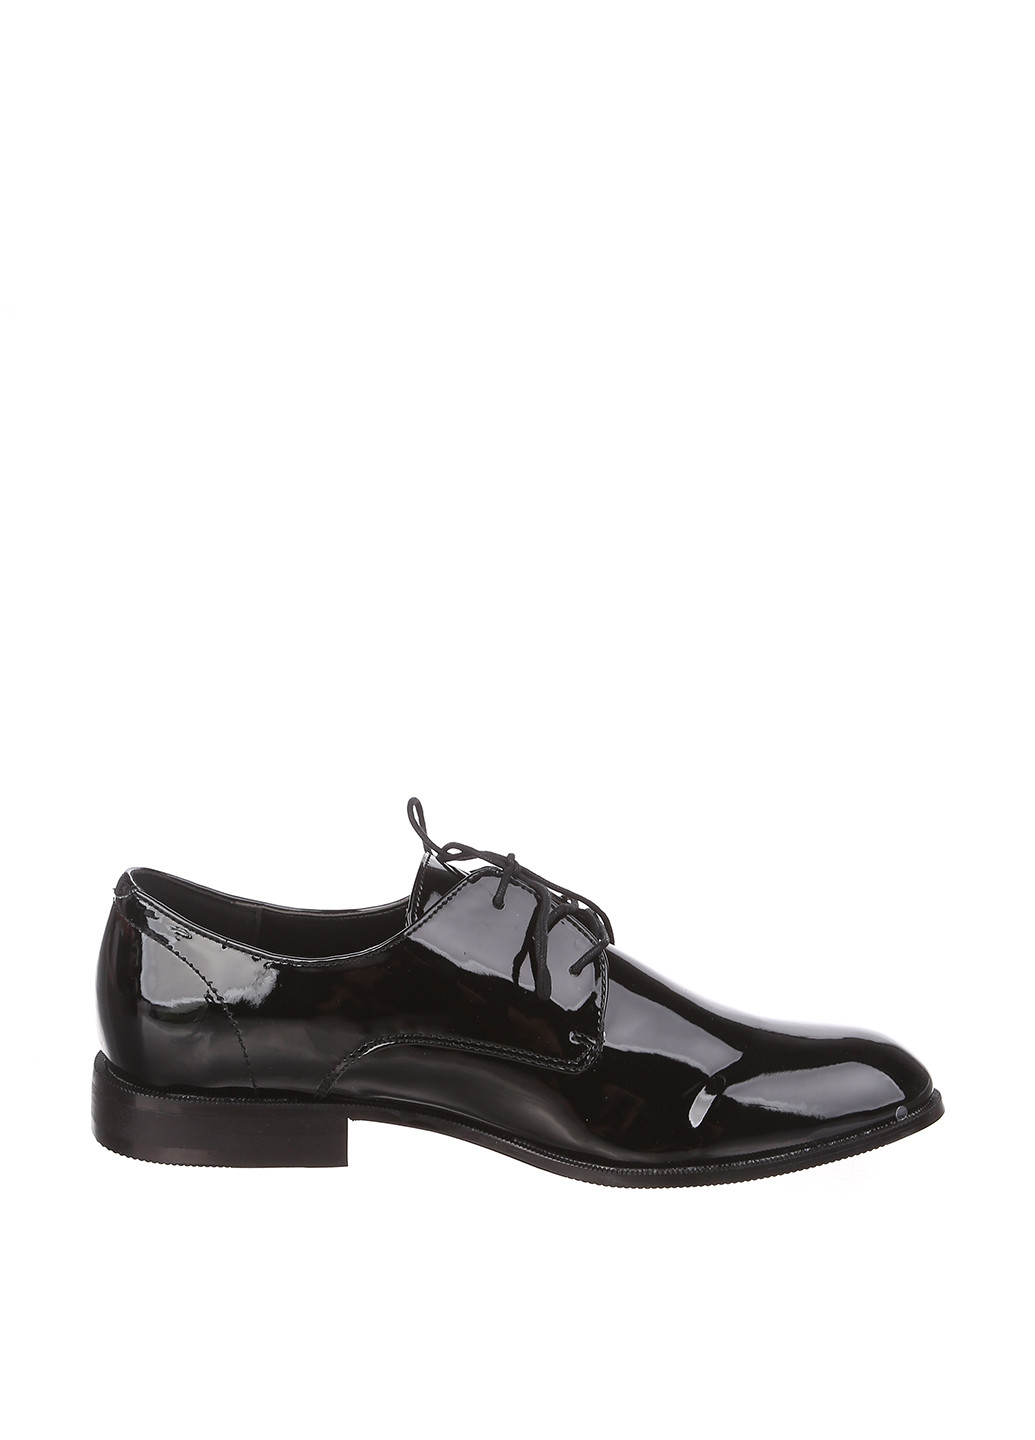 Черные классические туфли H&M на шнурках